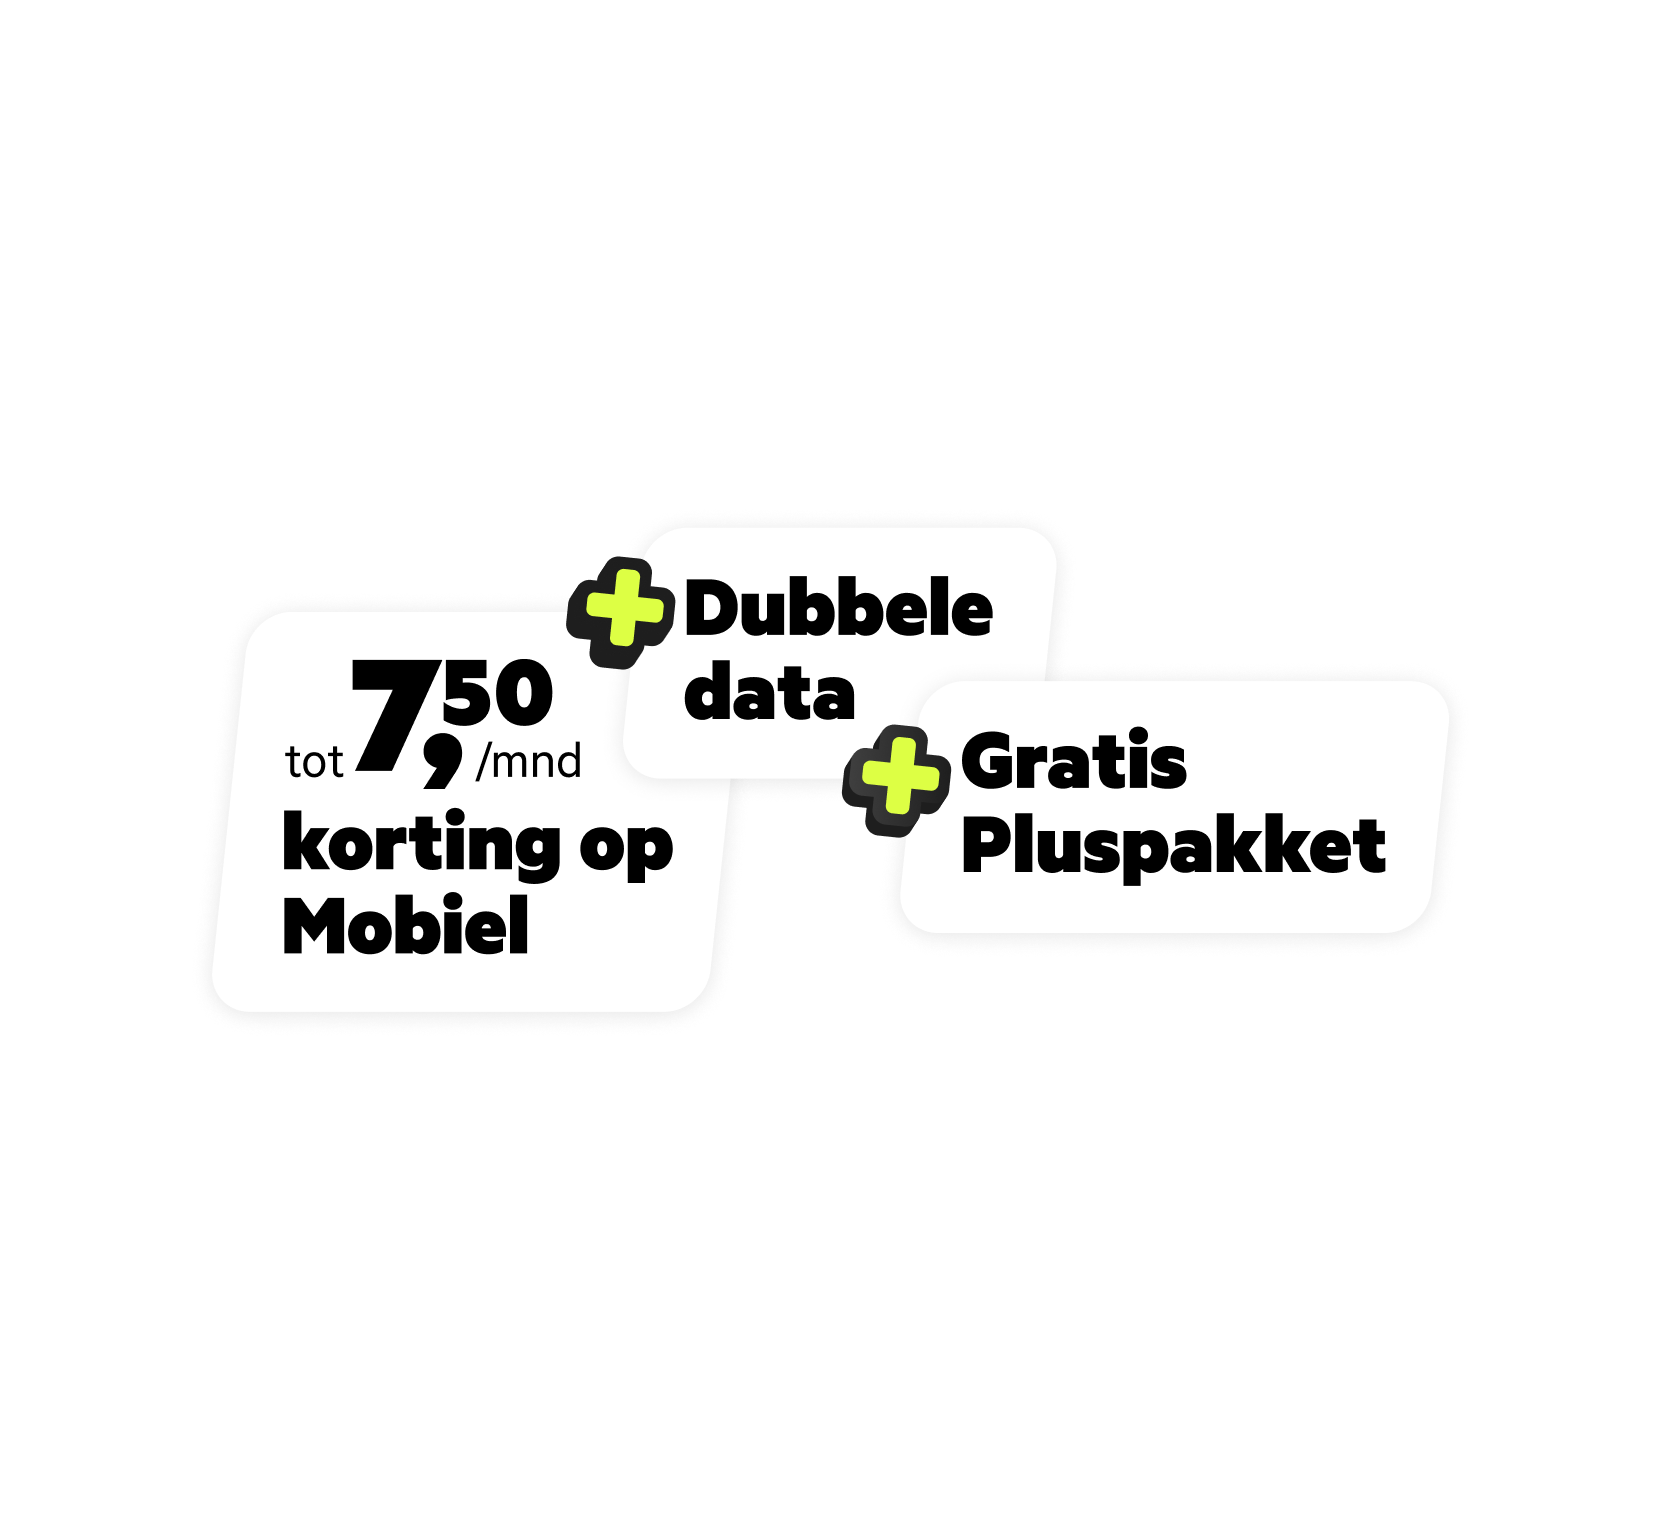 Combivoordeel: tot 7,50 euro per maand + dubbele data + gratis pluspakket